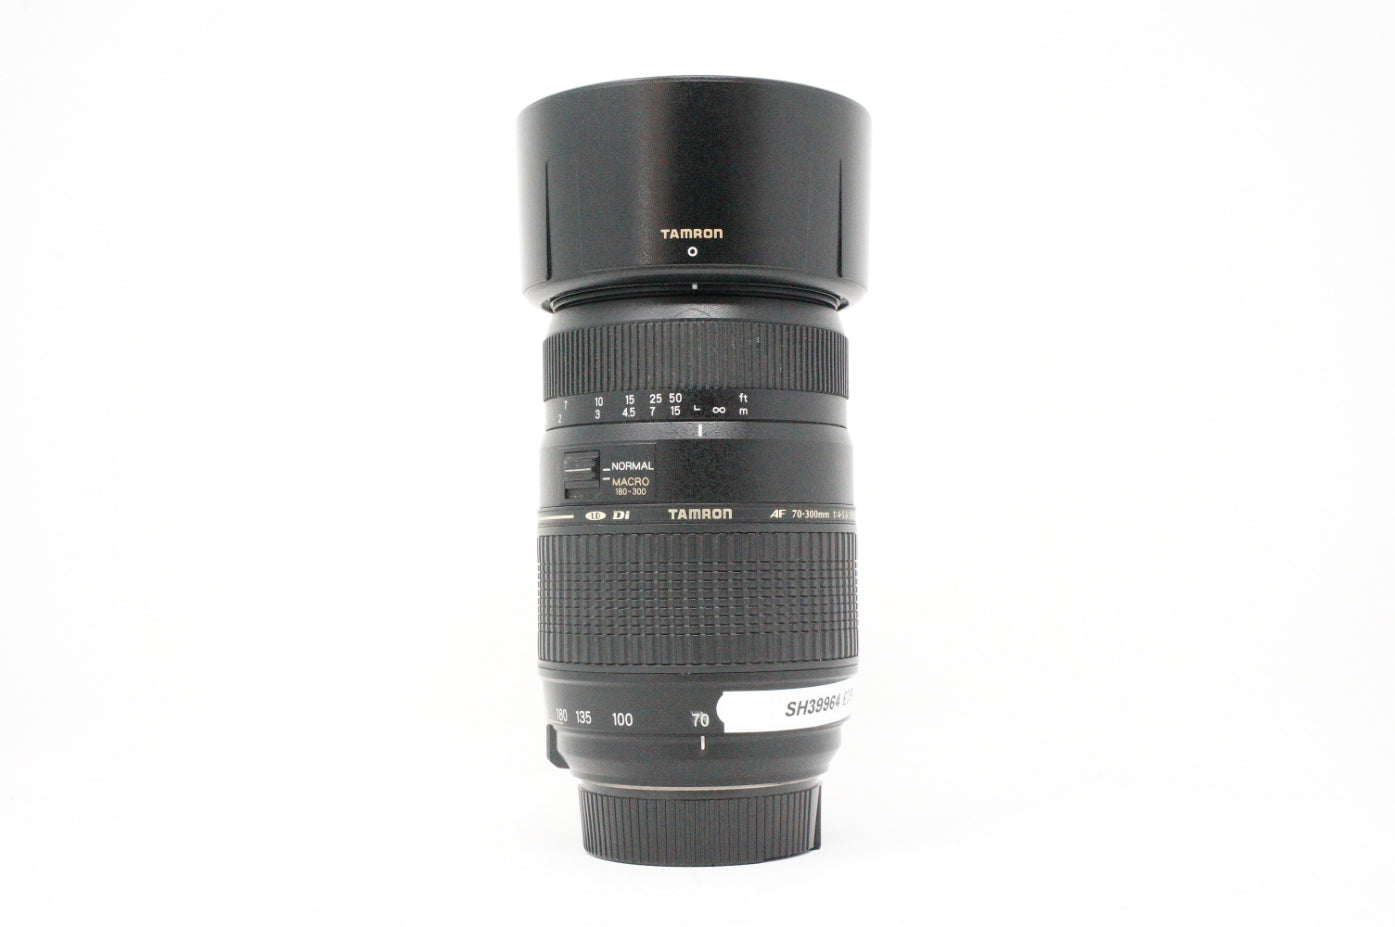 Used Tamron AF 70-300mm F/4-5.6 Di LD Macro lens for Nikon DSLR cameras